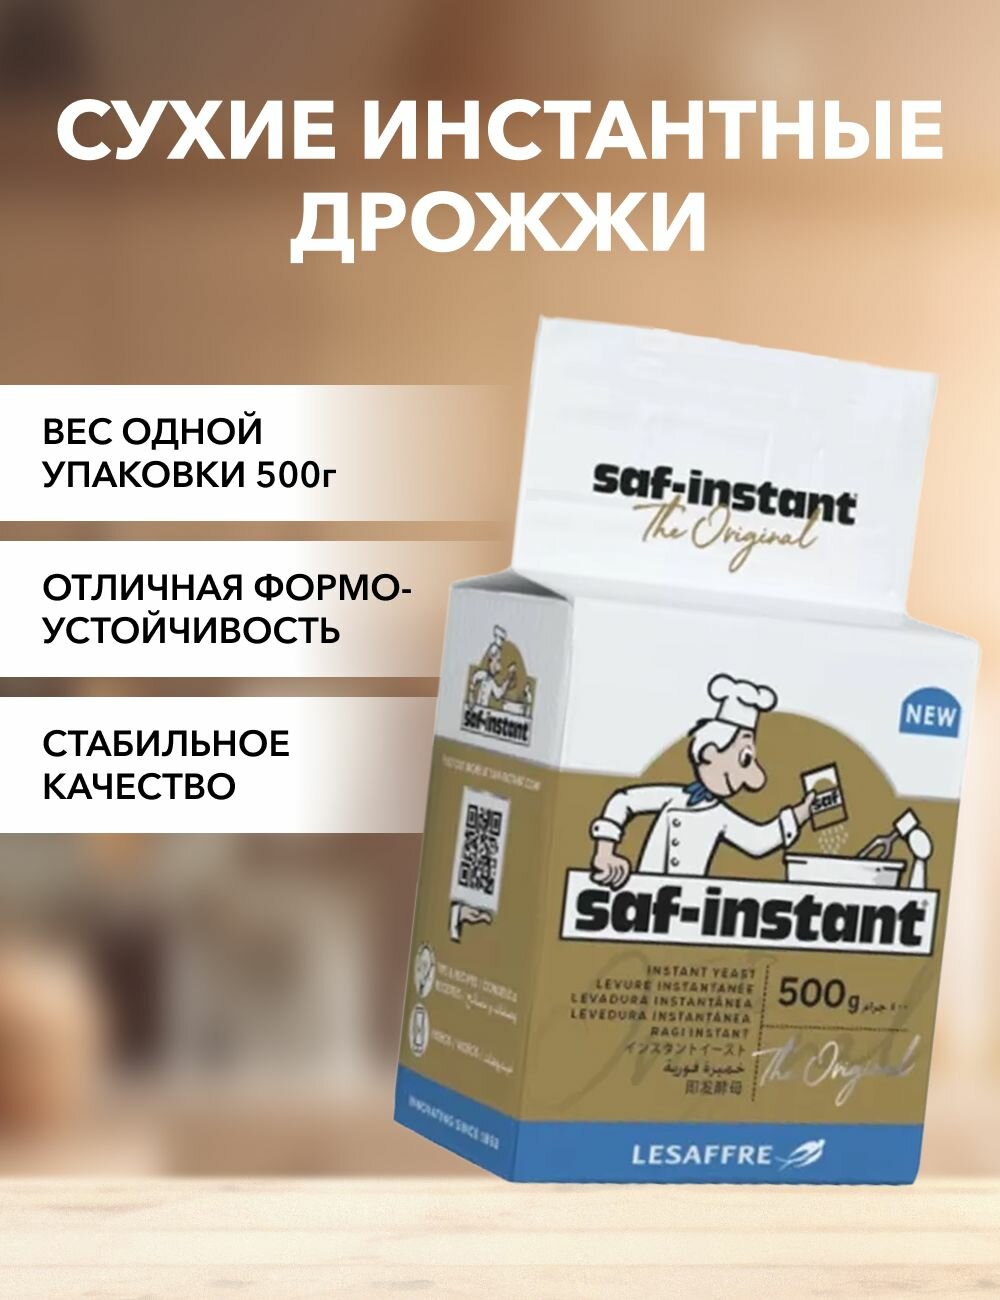 Дрожжи сухие инстантные Saf-instant 500 г*1 шт